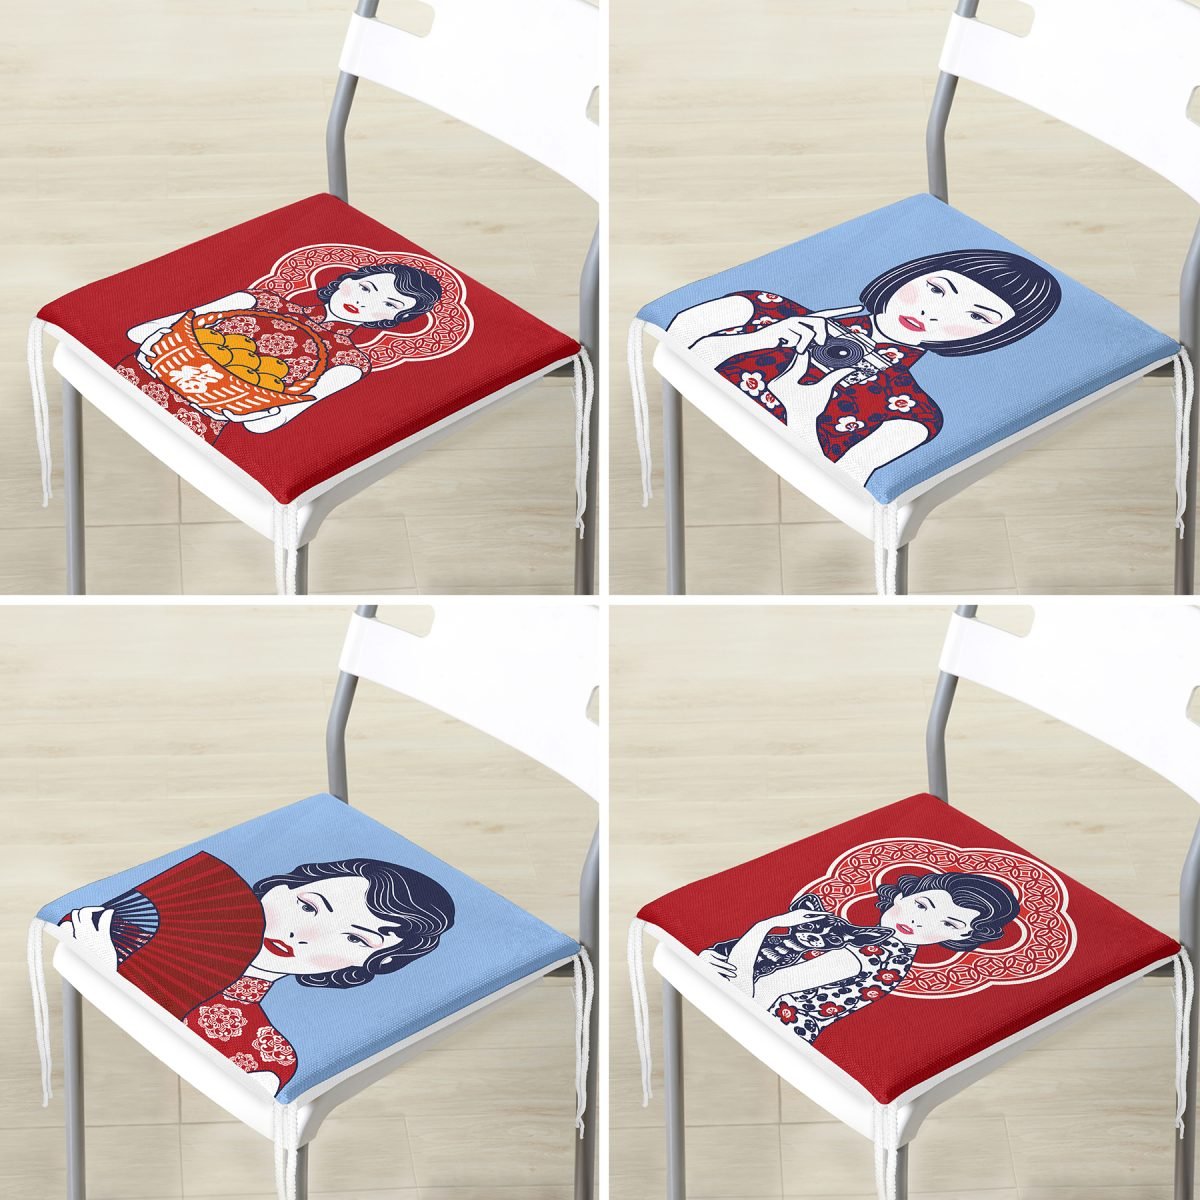 4'lü Kırmızı Ve Mavi Japon Kız Tasarımlı Dekoratif Fermuarlı Sandalye Minderi Seti Realhomes